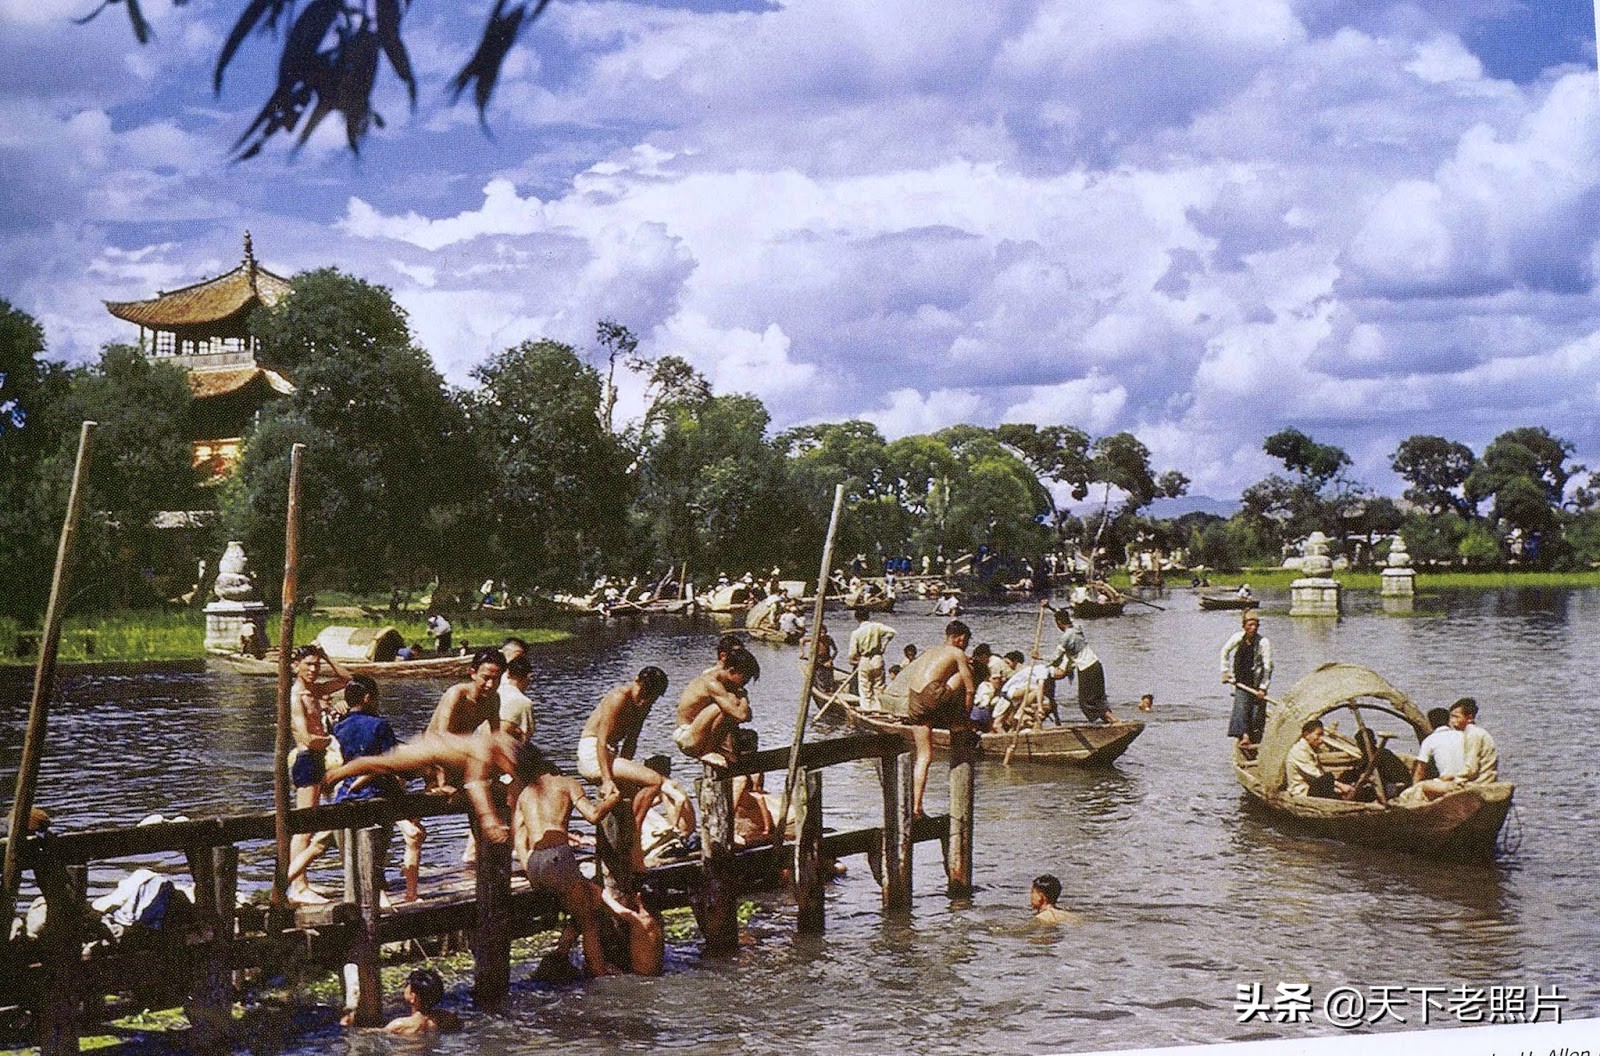 1944年 美国飞虎队员拍摄的云南昆明彩色老照片